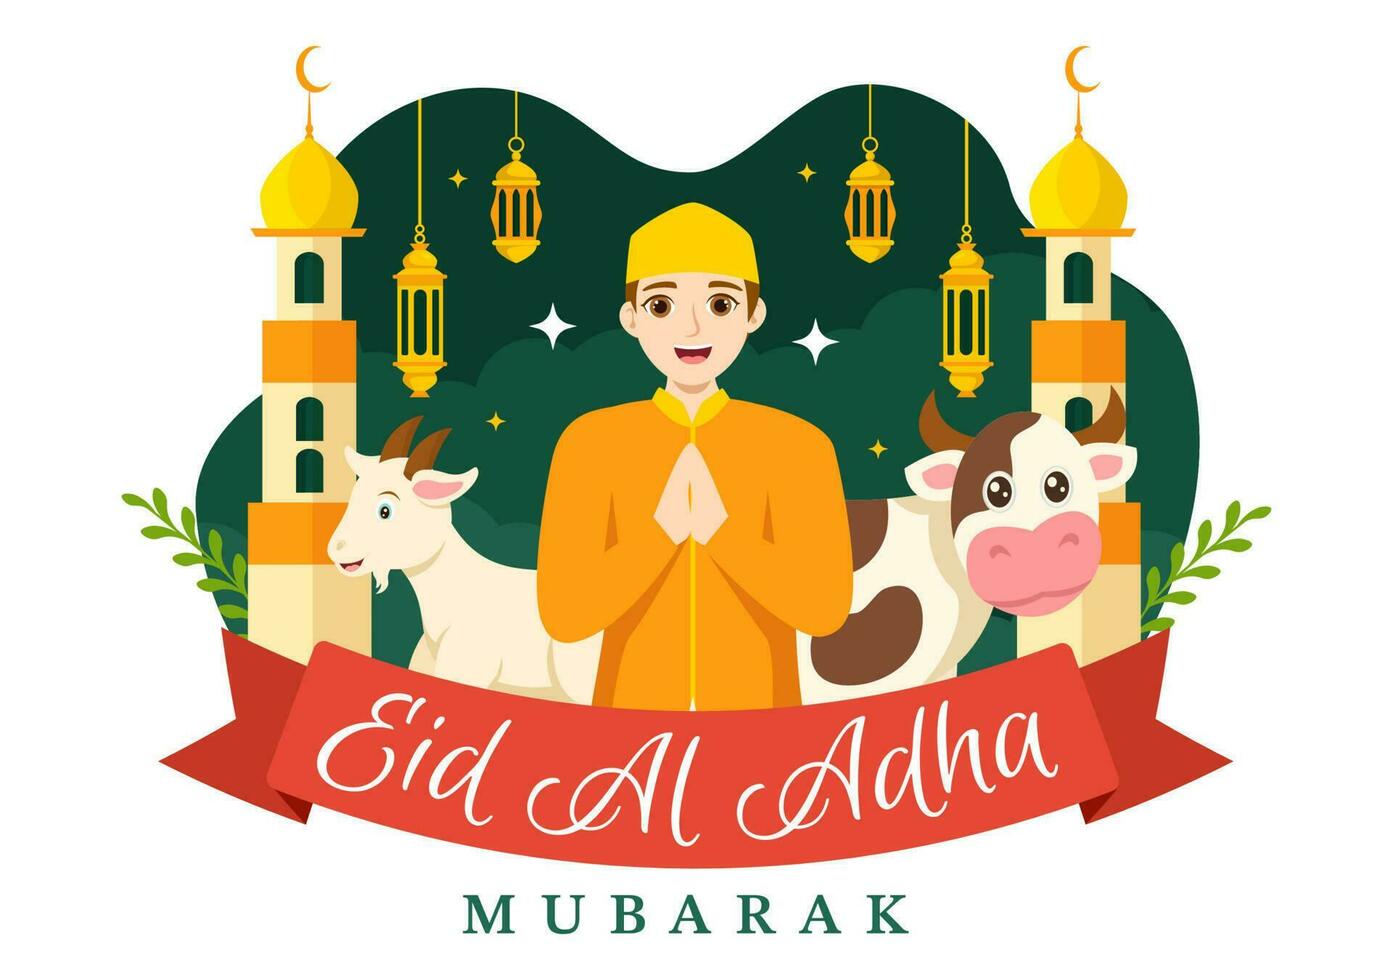 contento eid Alabama adha Mubarak vector ilustración de niños musulmanes celebracion con sacrificatorio animales cabra y vaca en dibujos animados mano dibujado plantillas